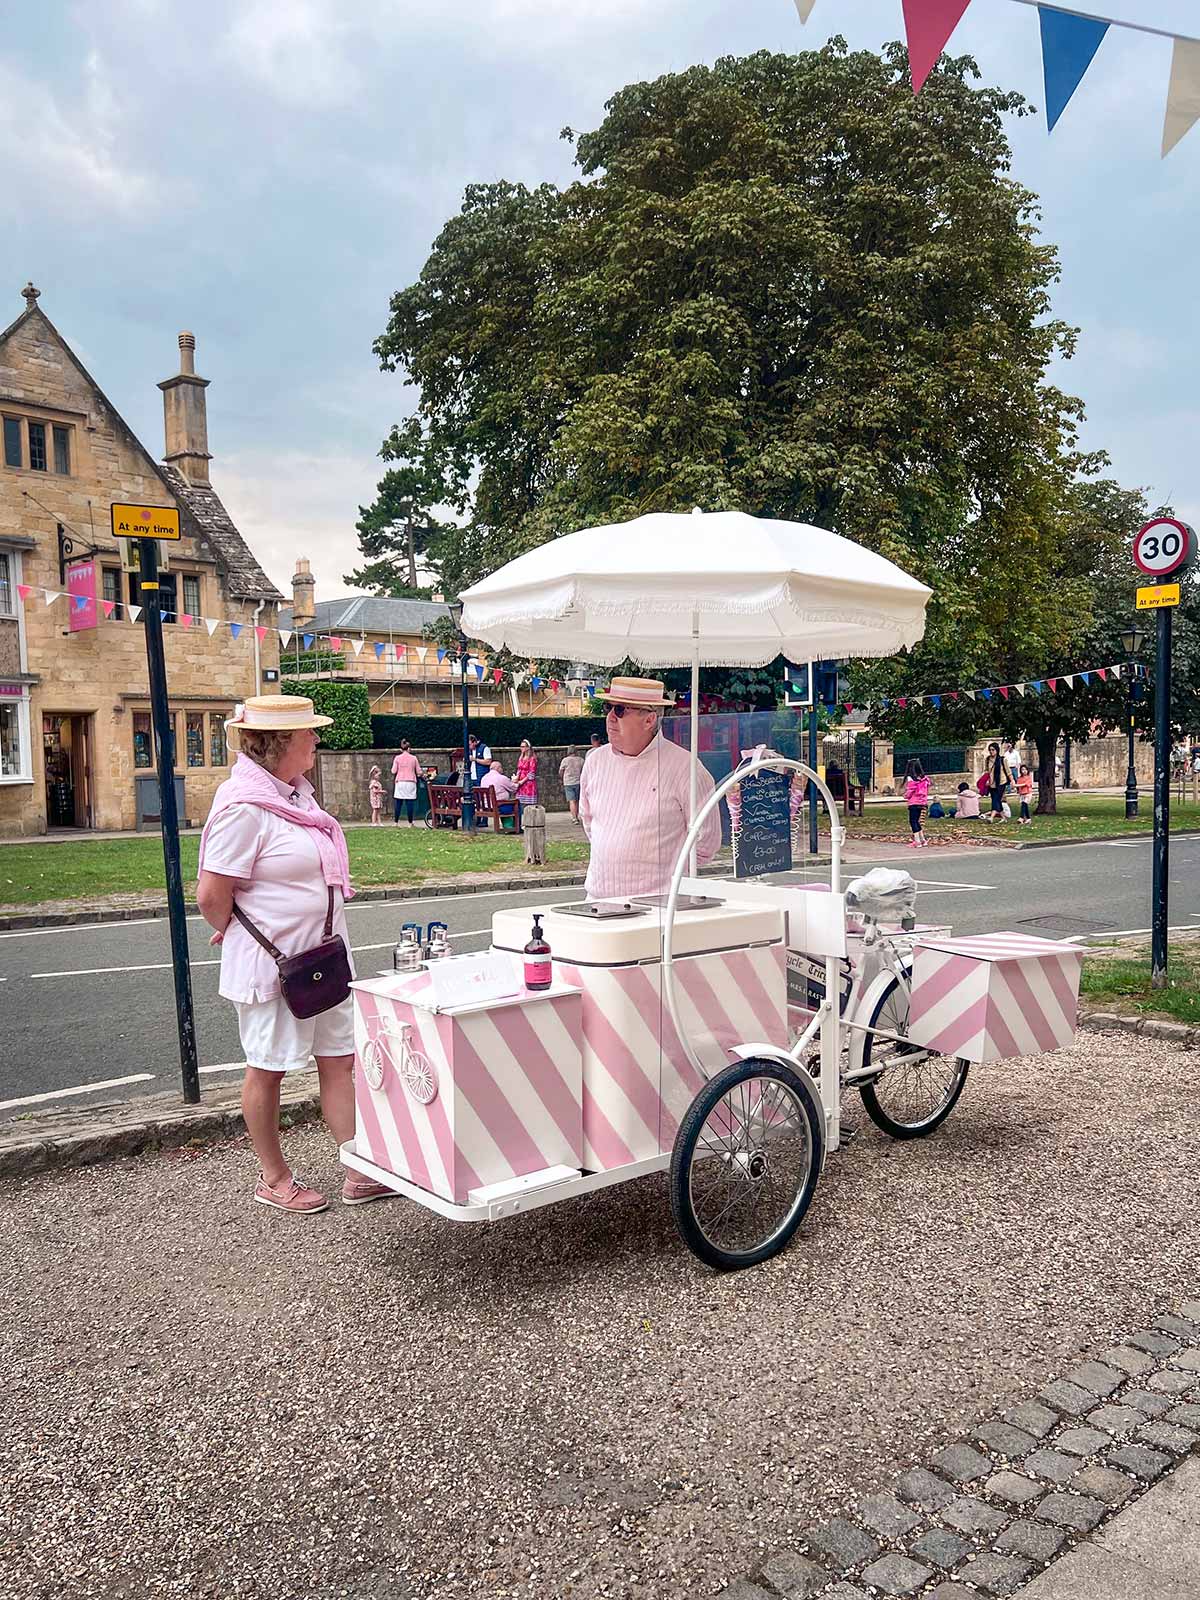 Marchand de crème glacée, Village de Broadway, Cotswolds, Angleterre, Royaume-Uni / Ice Cream Truck, Broadway Village, Cotswolds, England, UK